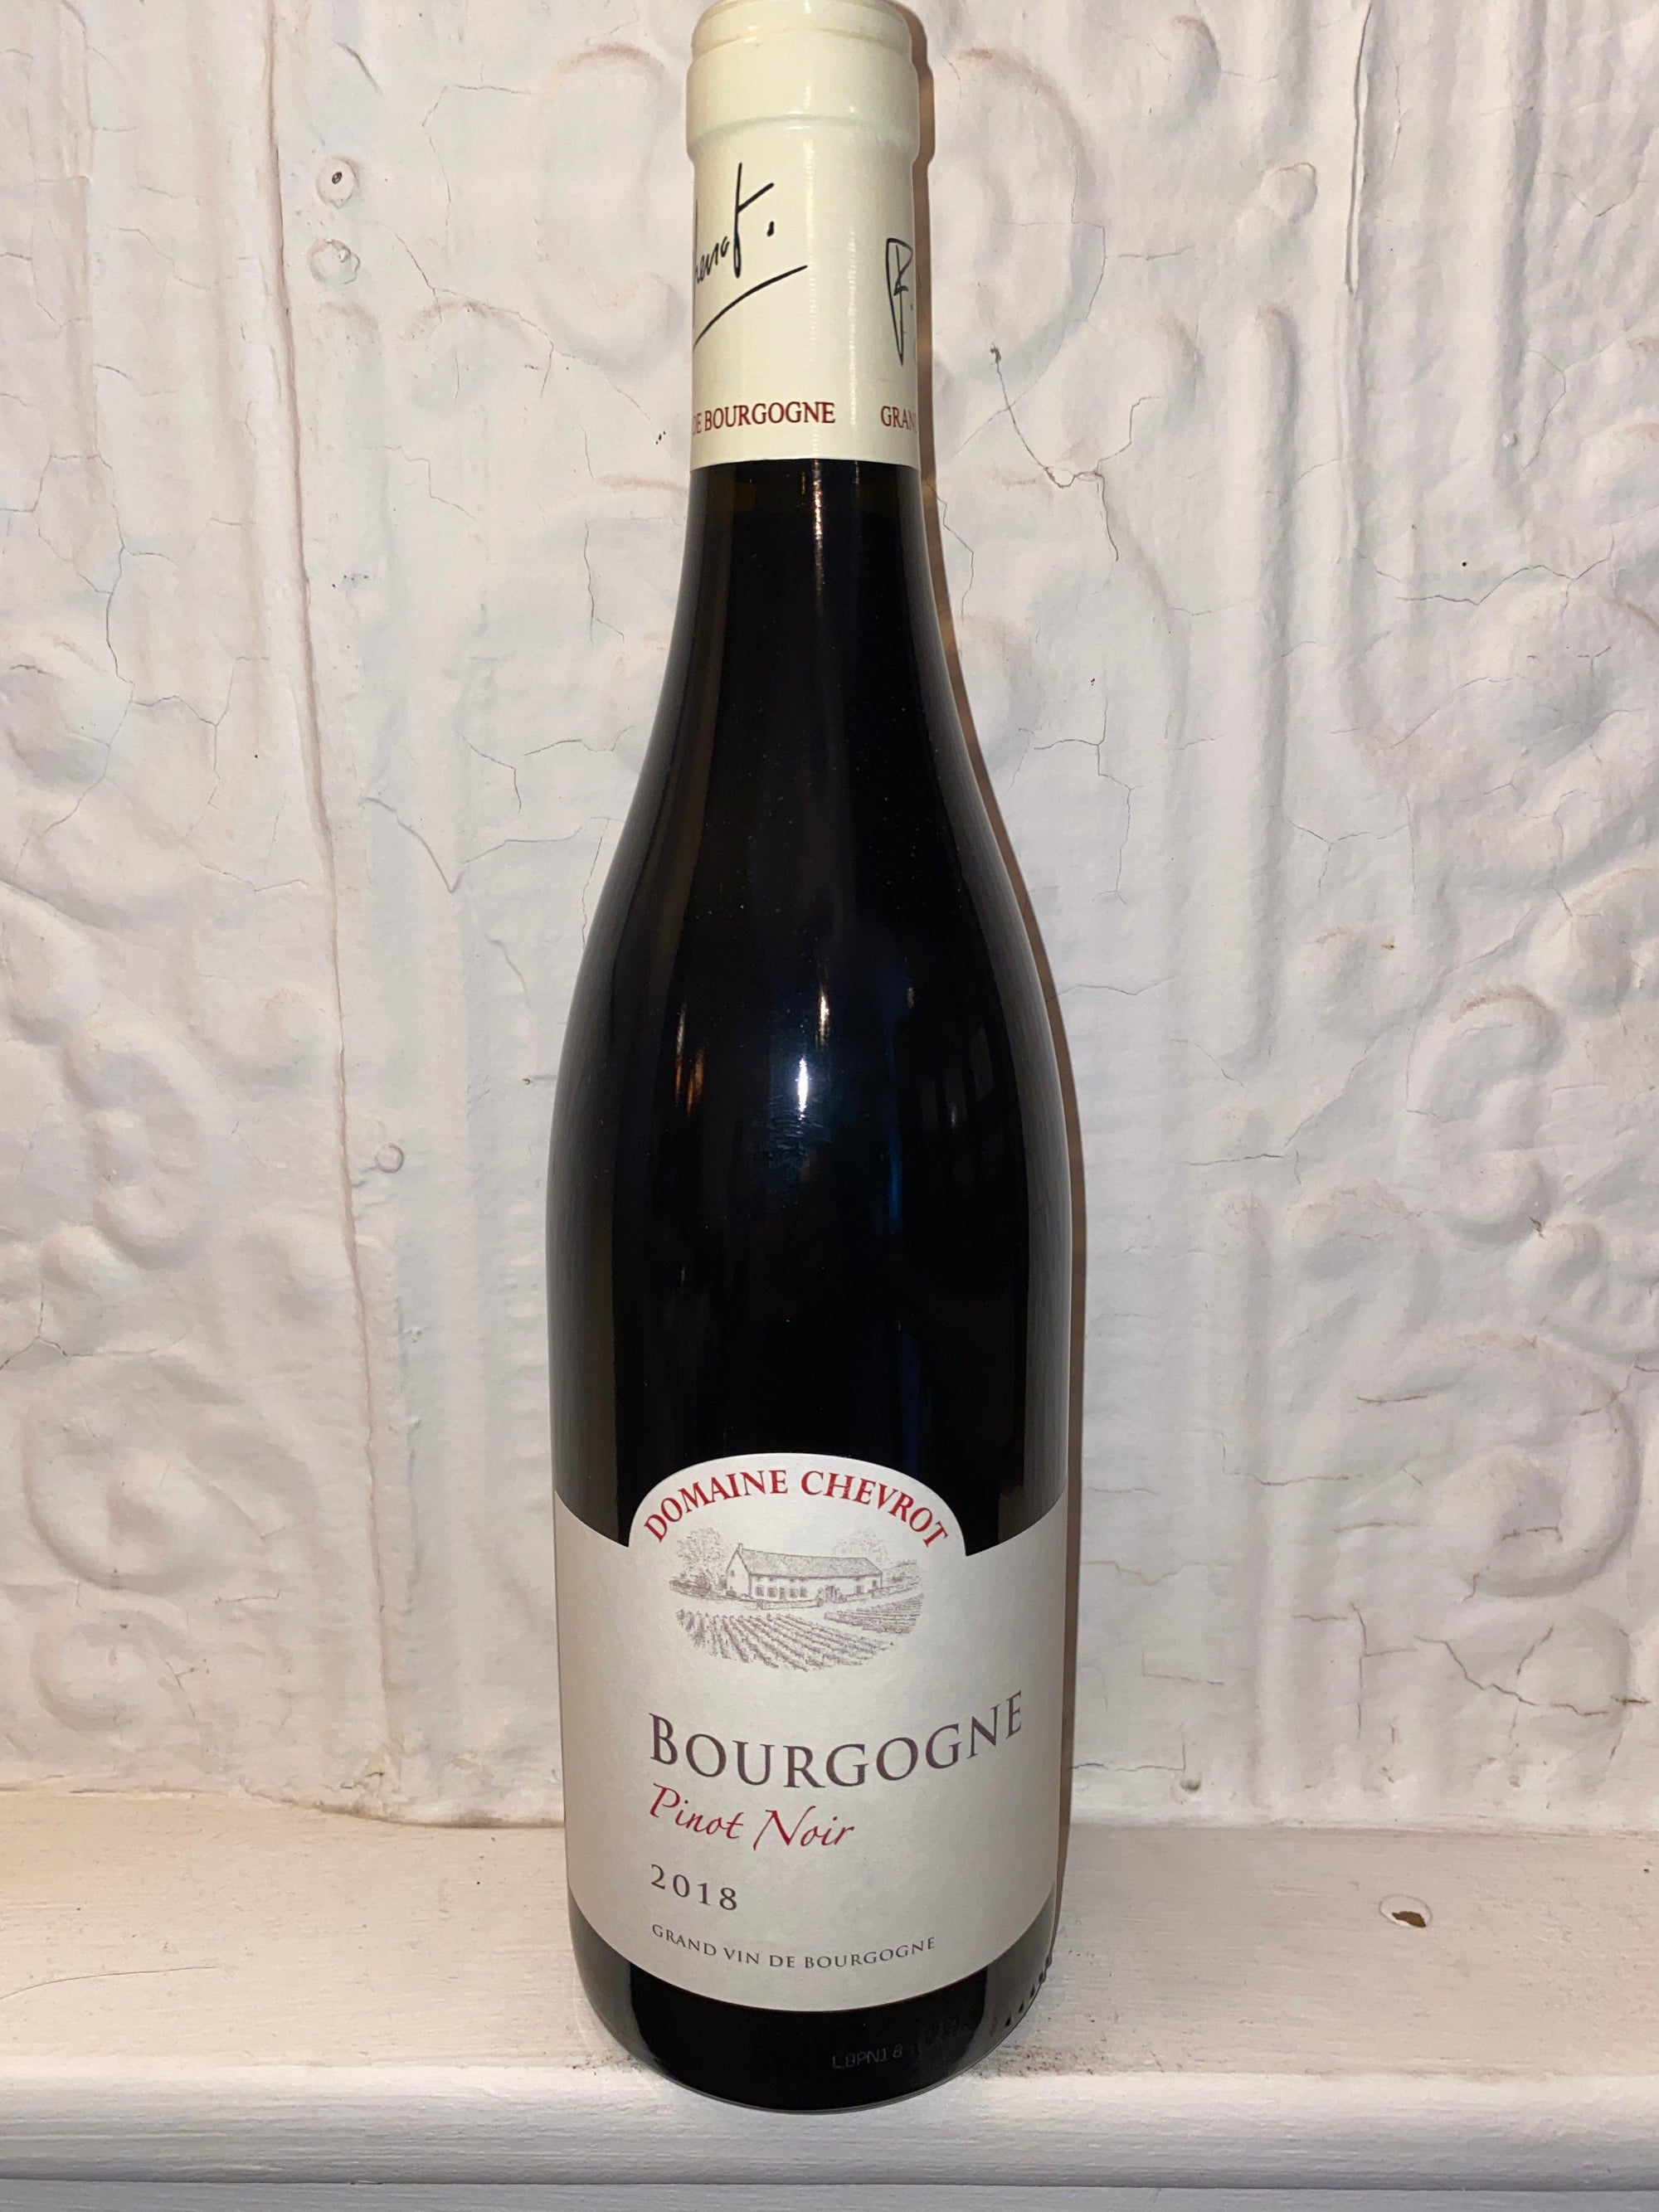 Pinot Noir, Domaine Chevrot 2018 (Burgundy, France)-Wine-Bibber & Bell